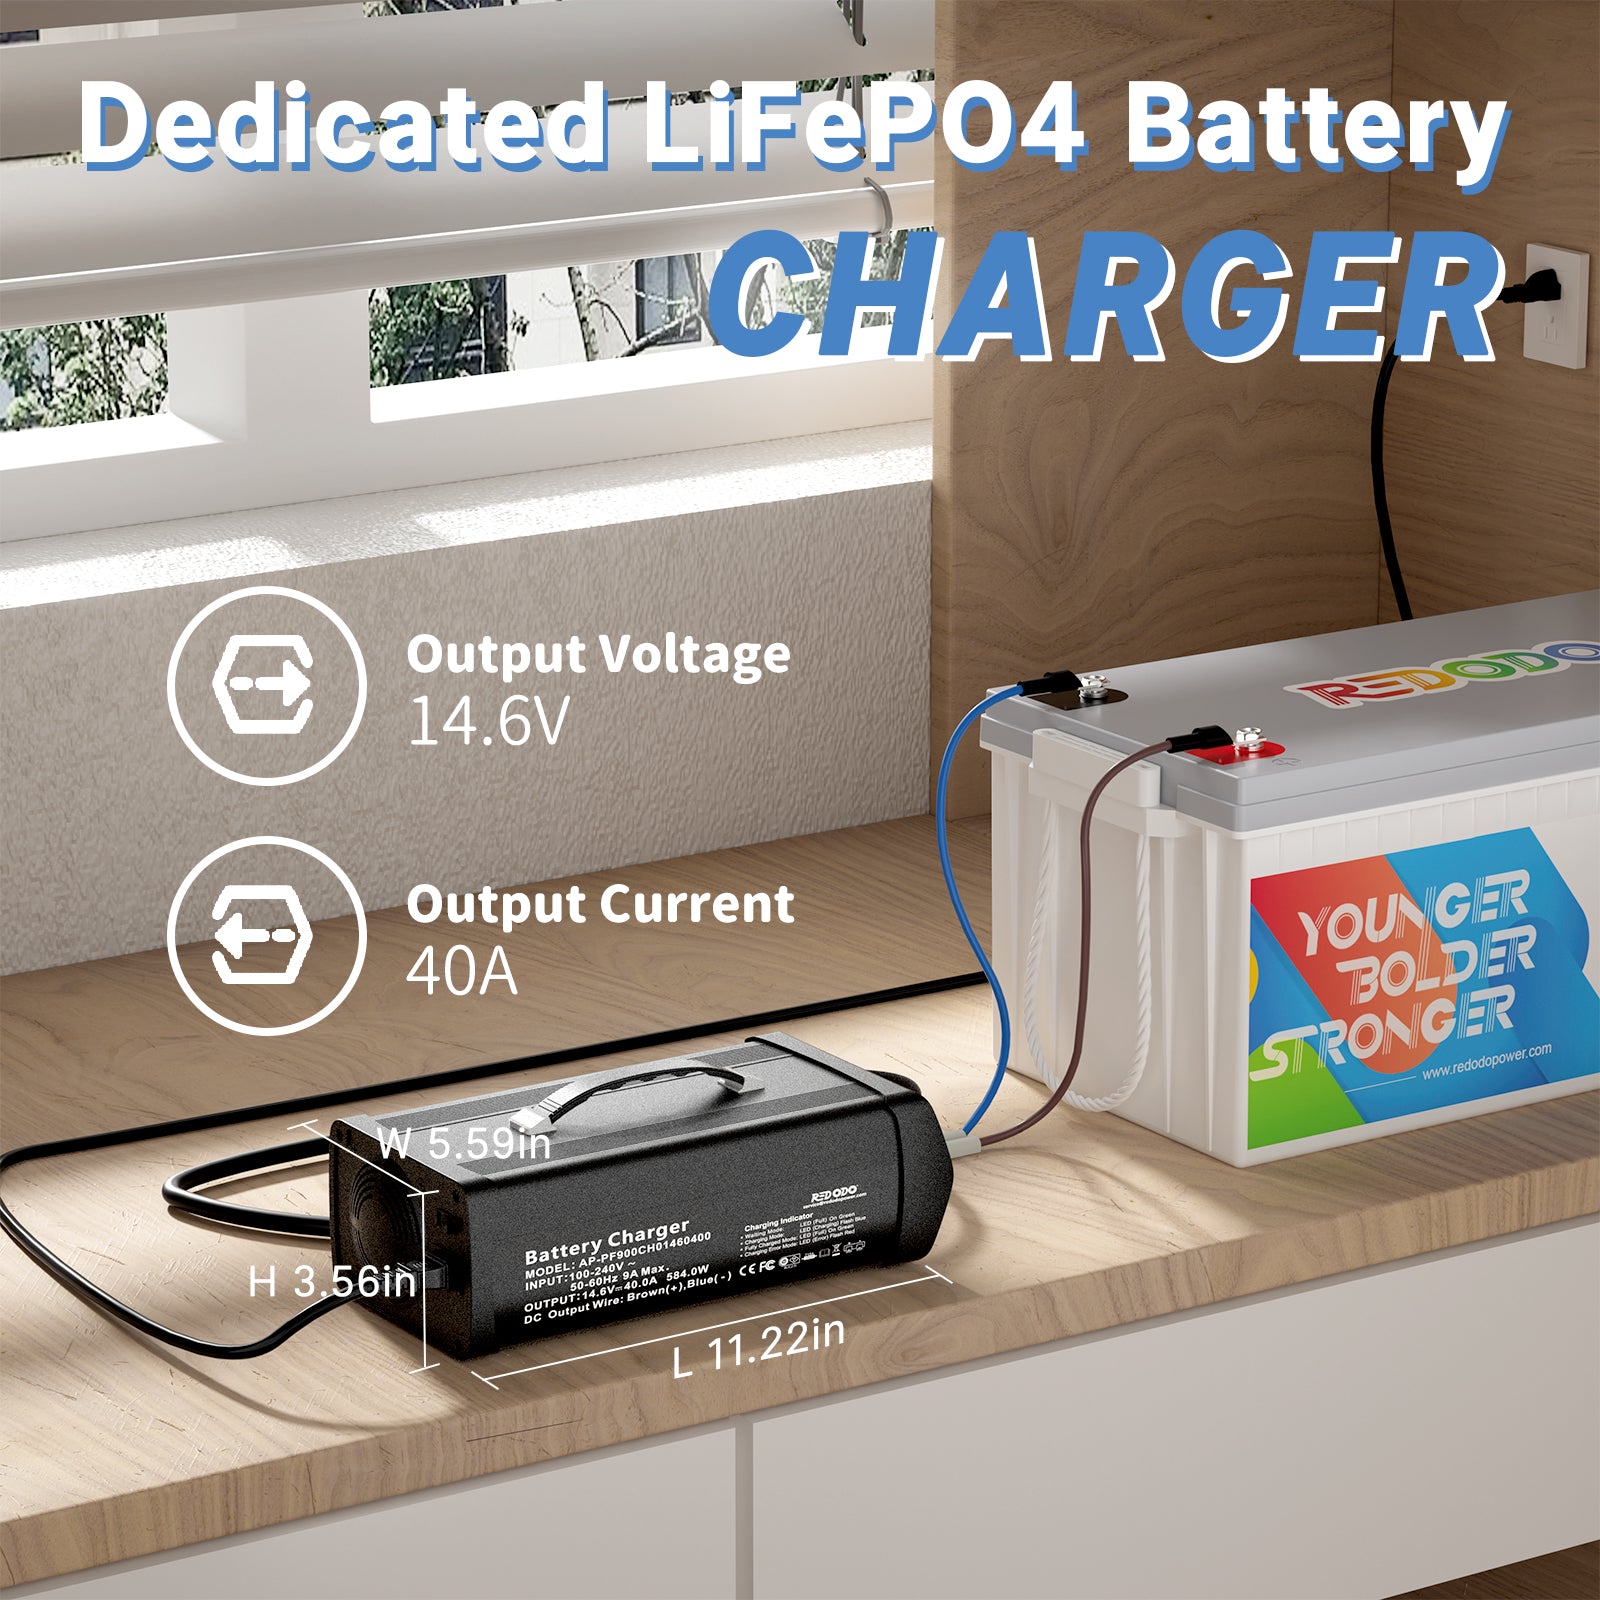 Redodo 14.6V 40A LiFePO4 Battery Charger Redodo Power